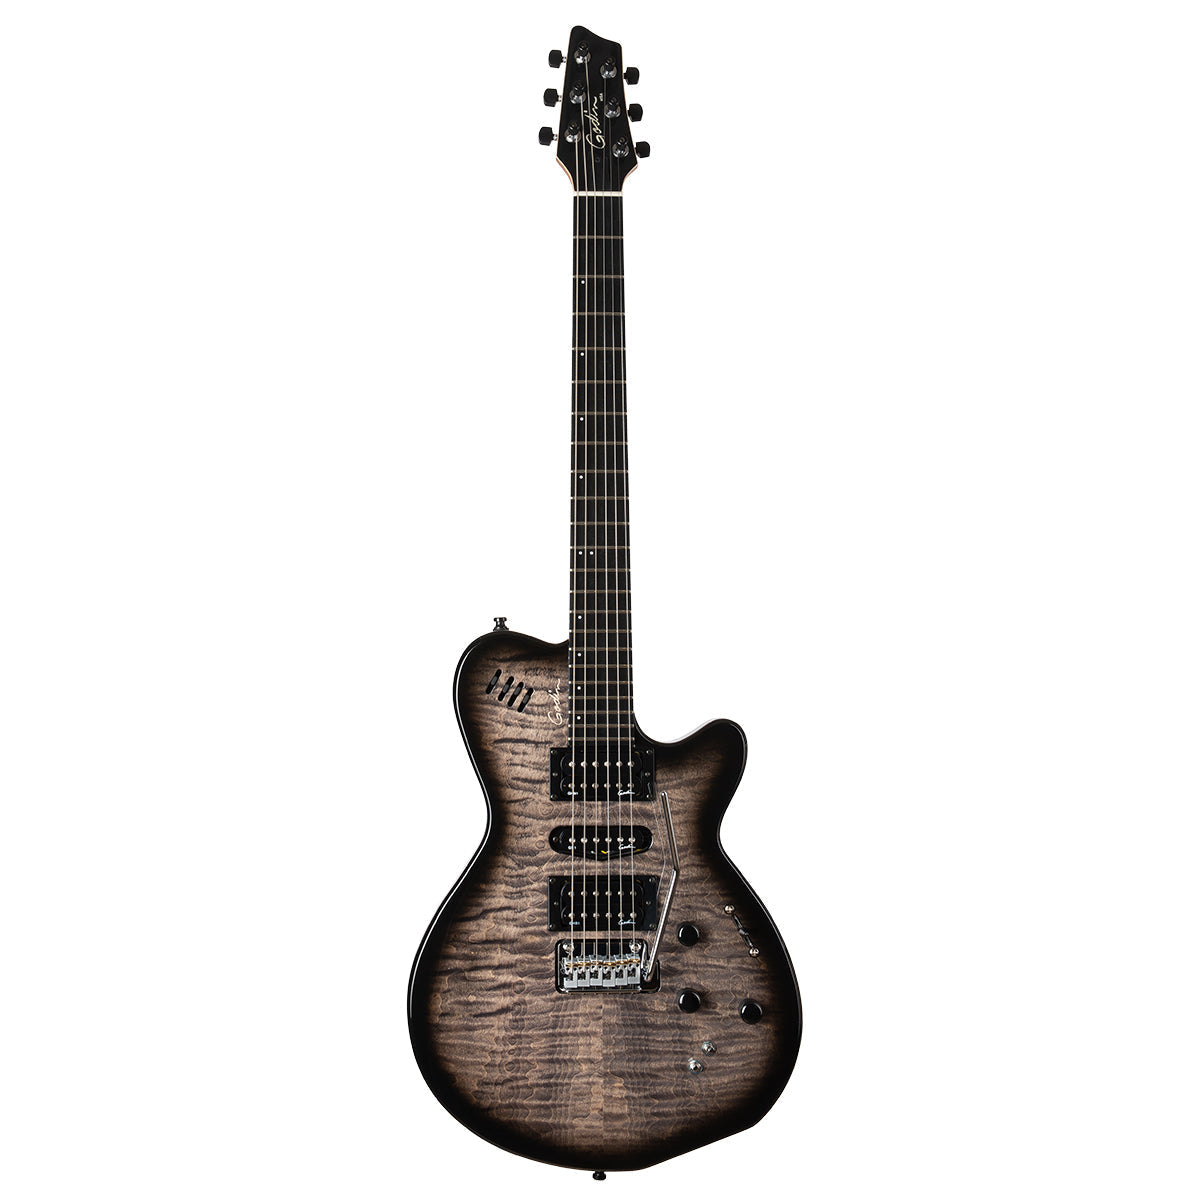 Godin XTSA 3 Voice Electric Guitar ~ Trans Black Flame, Electric Guitar for sale at Richards Guitars.